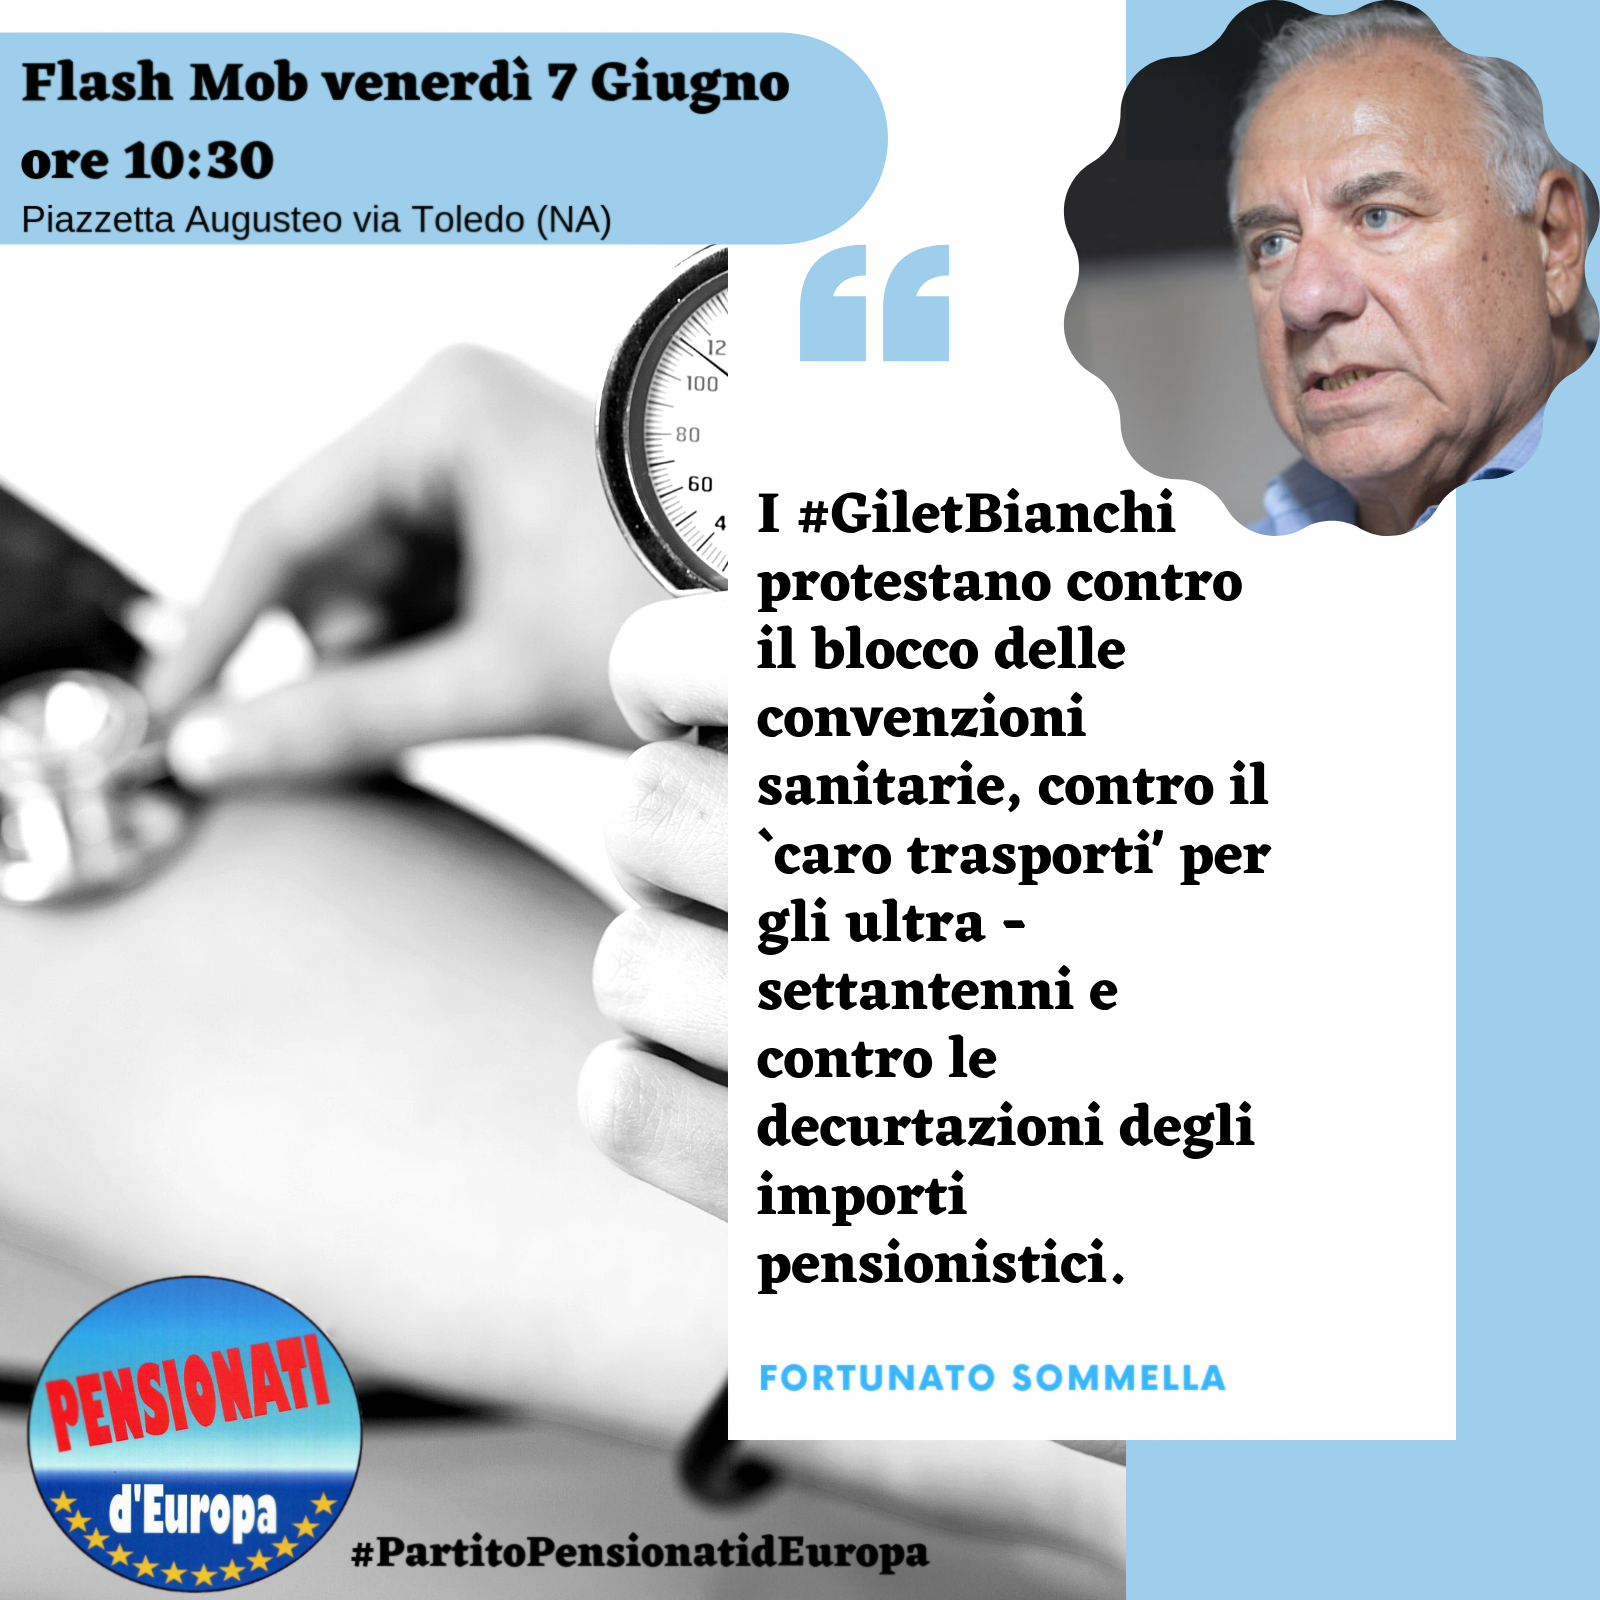 Sospensione convenzioni sanitarie, Caro Trasporti, Pensioni: a Napoli FlashMob dei Gilet Bianchi